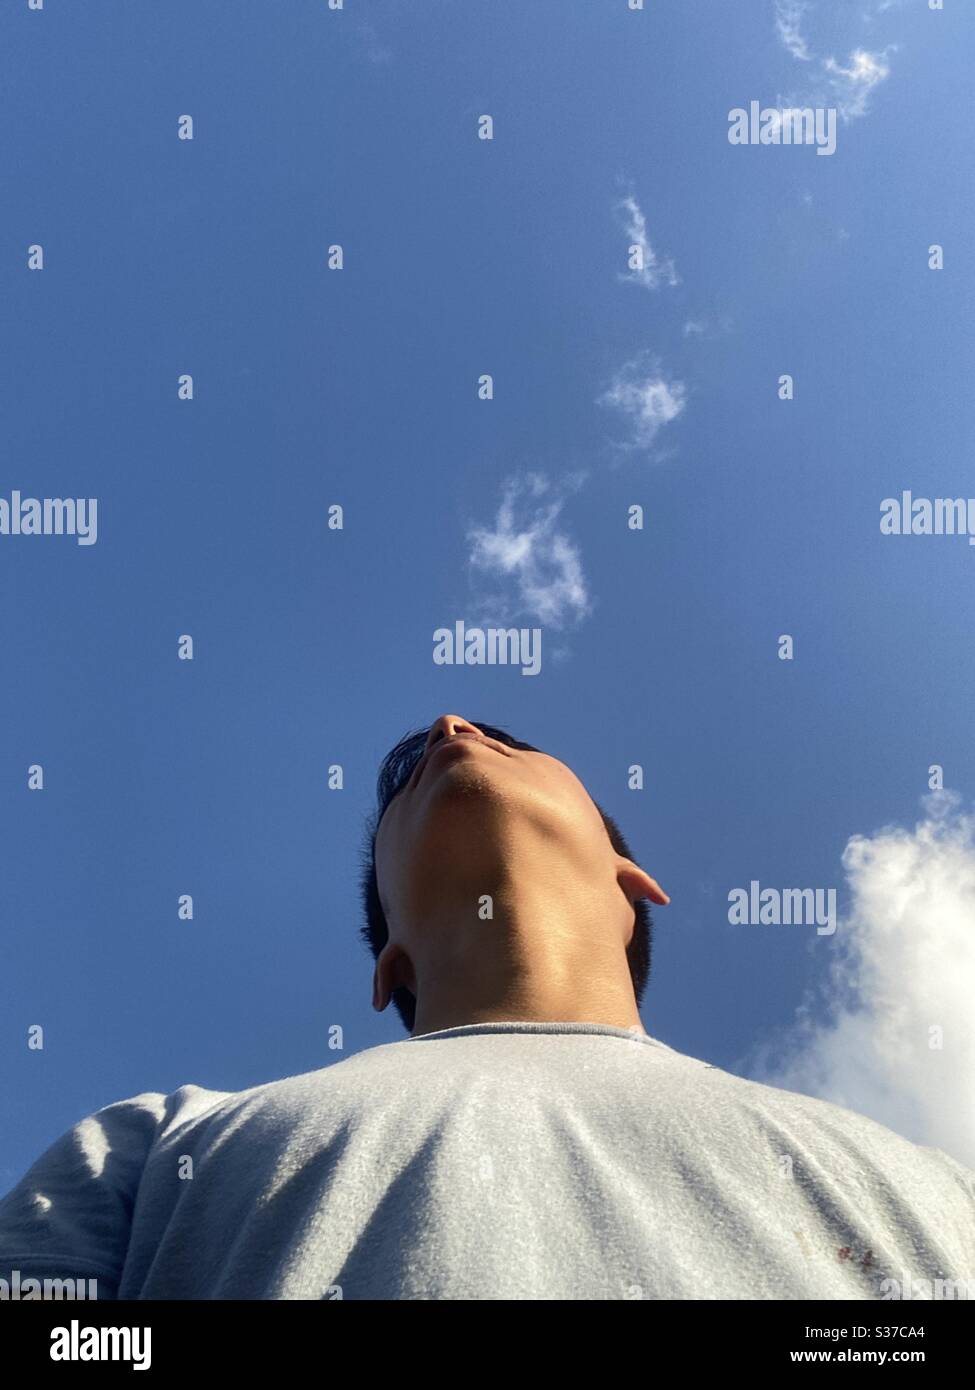 Joven con un cielo despejado demostrando interés de estar solo en un espacio confuso Stock Photo